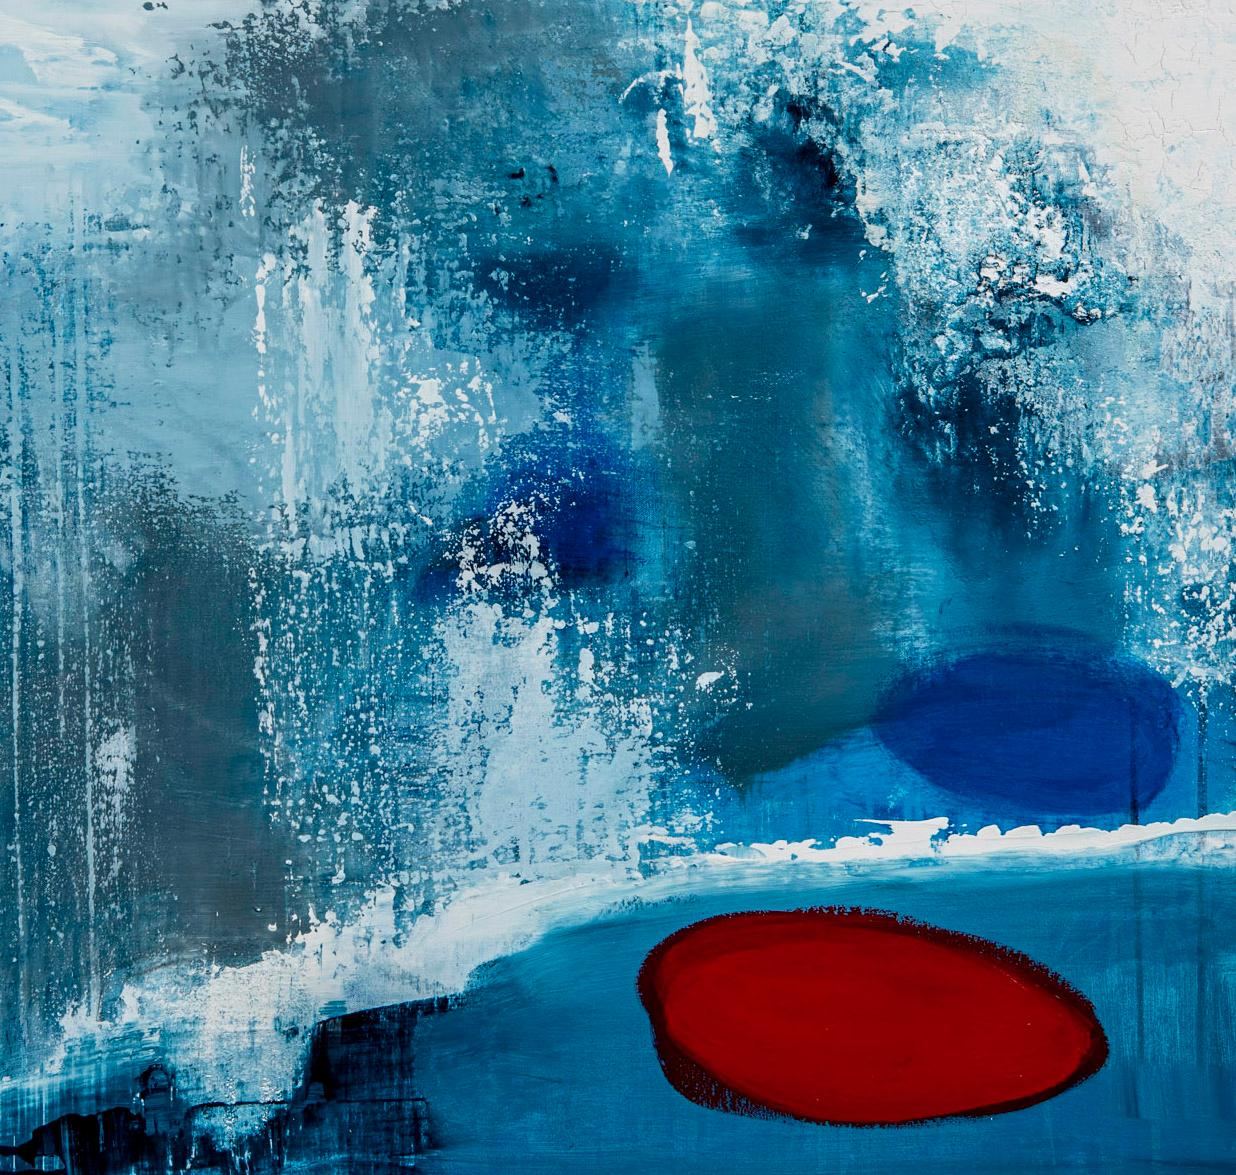 Goutte rouge - Bleu Abstract Painting par Paddy Cohn